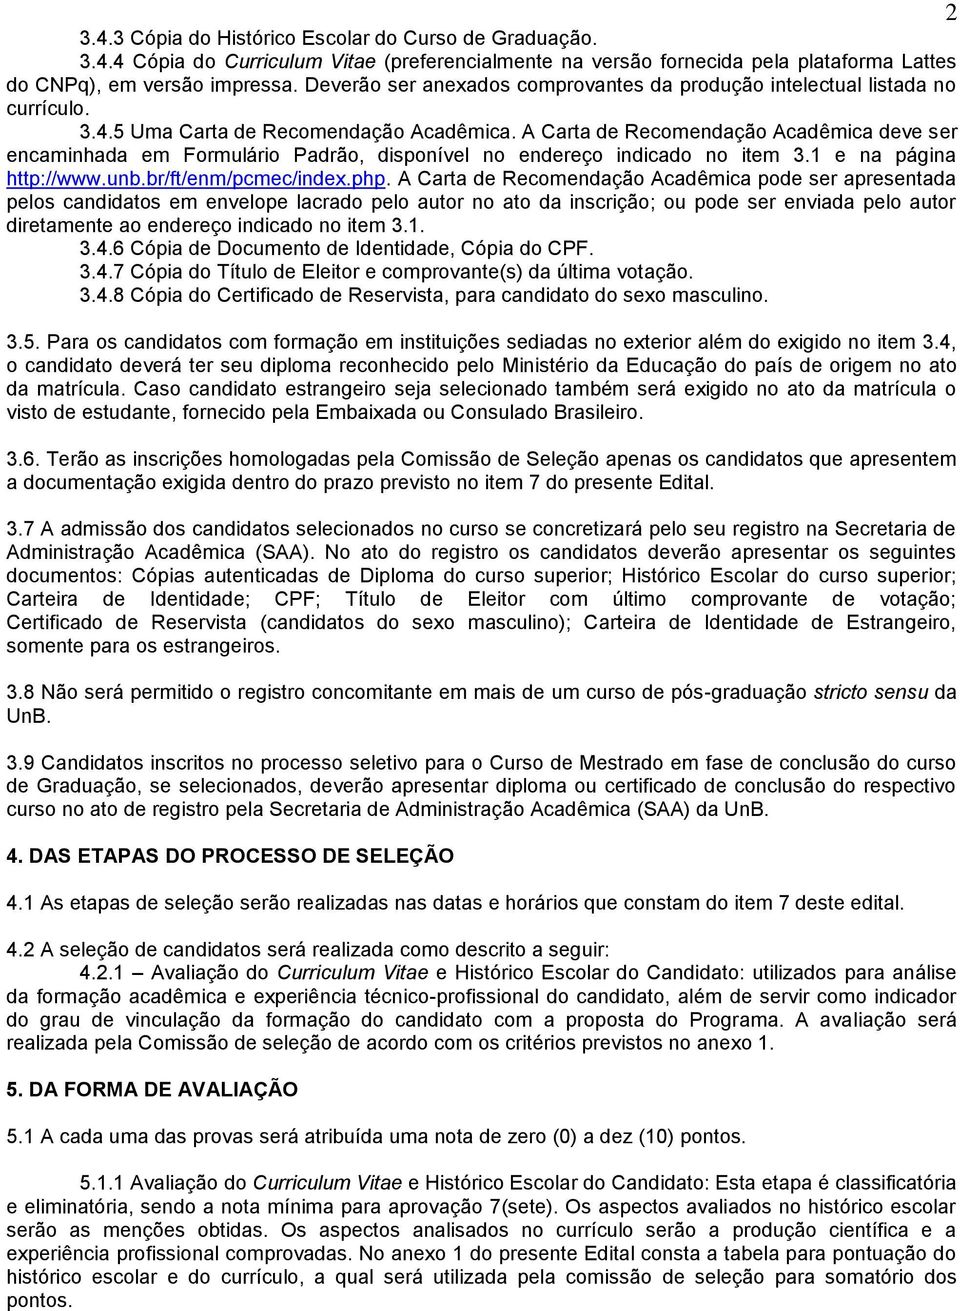 A Carta de Recomendação Acadêmica deve ser encaminhada em Formulário Padrão, disponível no endereço indicado no item 3.1 e na página http://www.unb.br/ft/enm/pcmec/index.php.